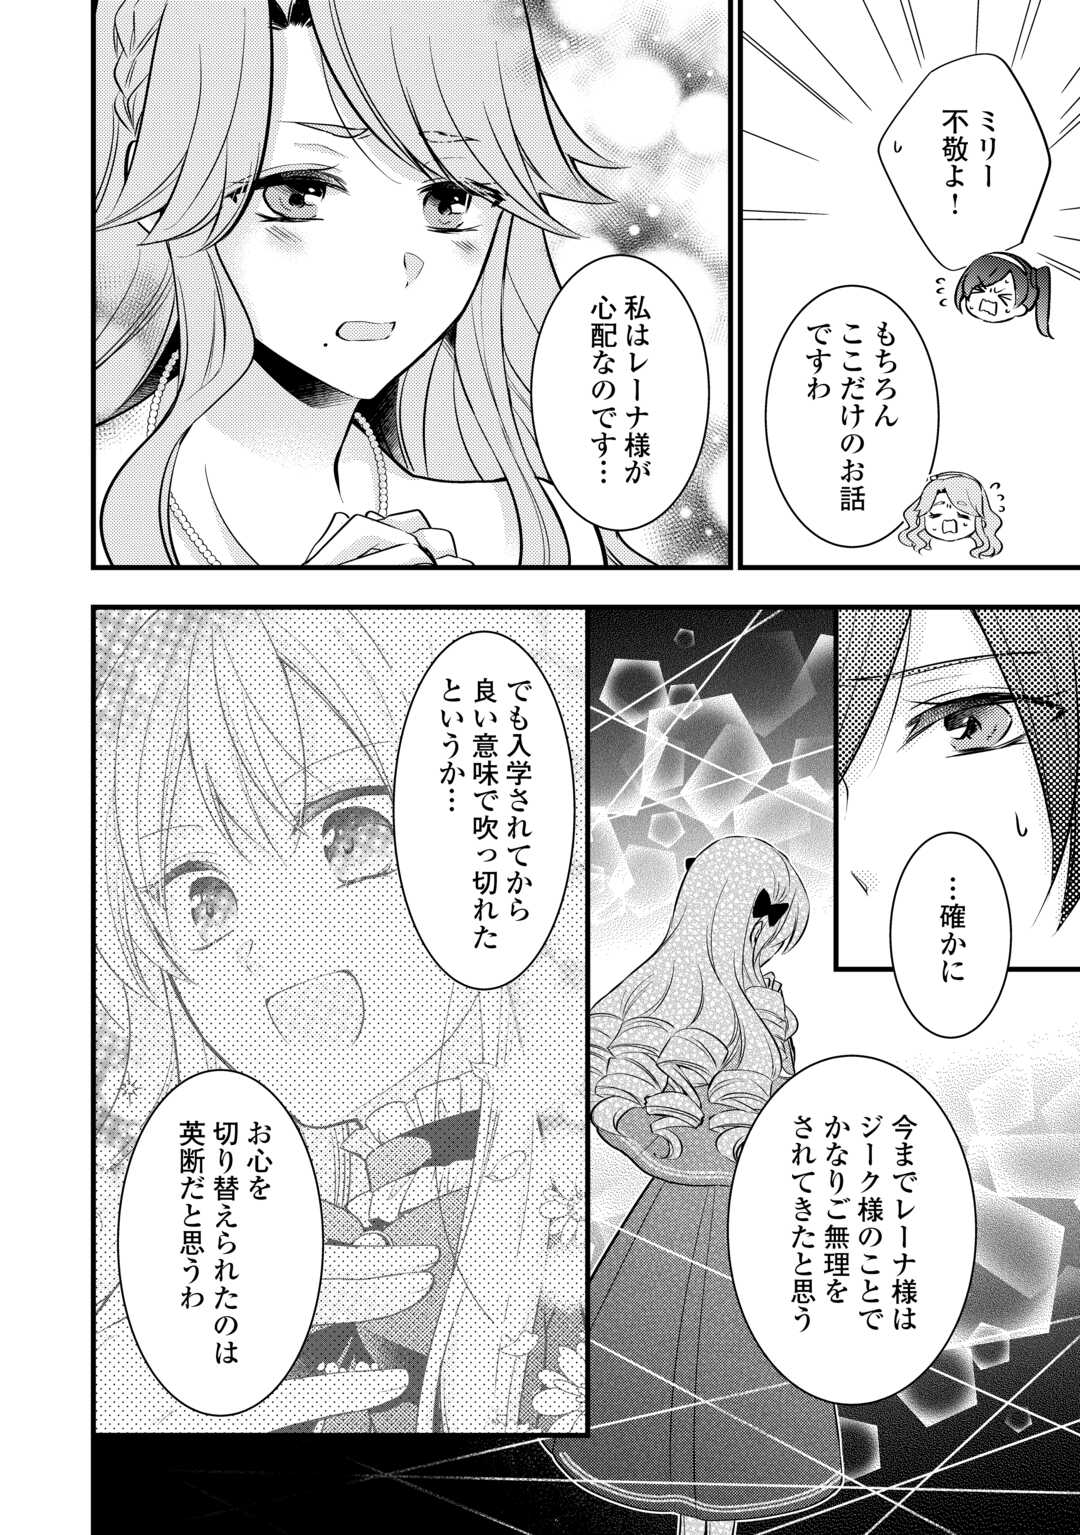 Akuyaku Reijou wa Heroine wo Ijimeteiru Baai de wa Nai - Chapter 19.6 - Page 2